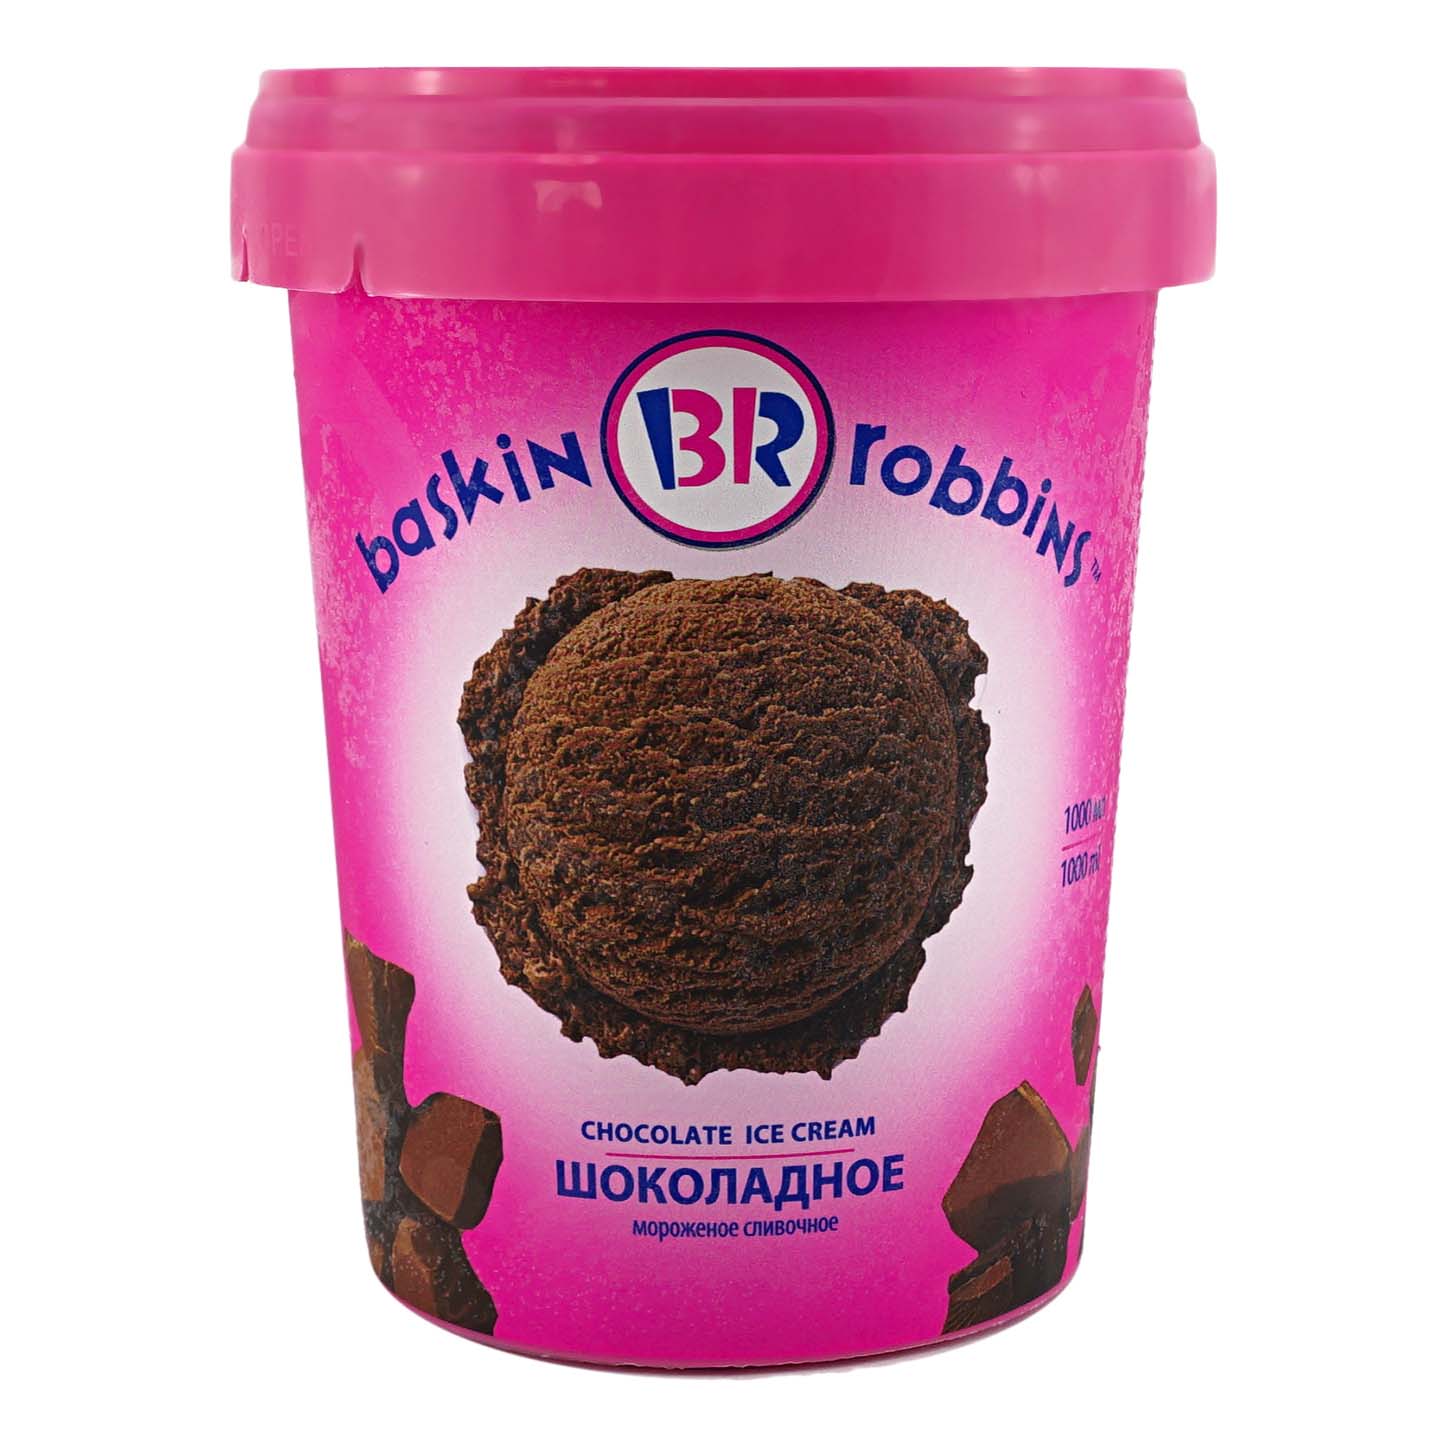 Мороженое в баночке. Мороженое Баскин Роббинс шоколадное 1000мл. Баскин Роббинс мороженое шоколадное. Баскин Роббинс 1000 мл. Баскин Роббинс мороженое 1000 мл.